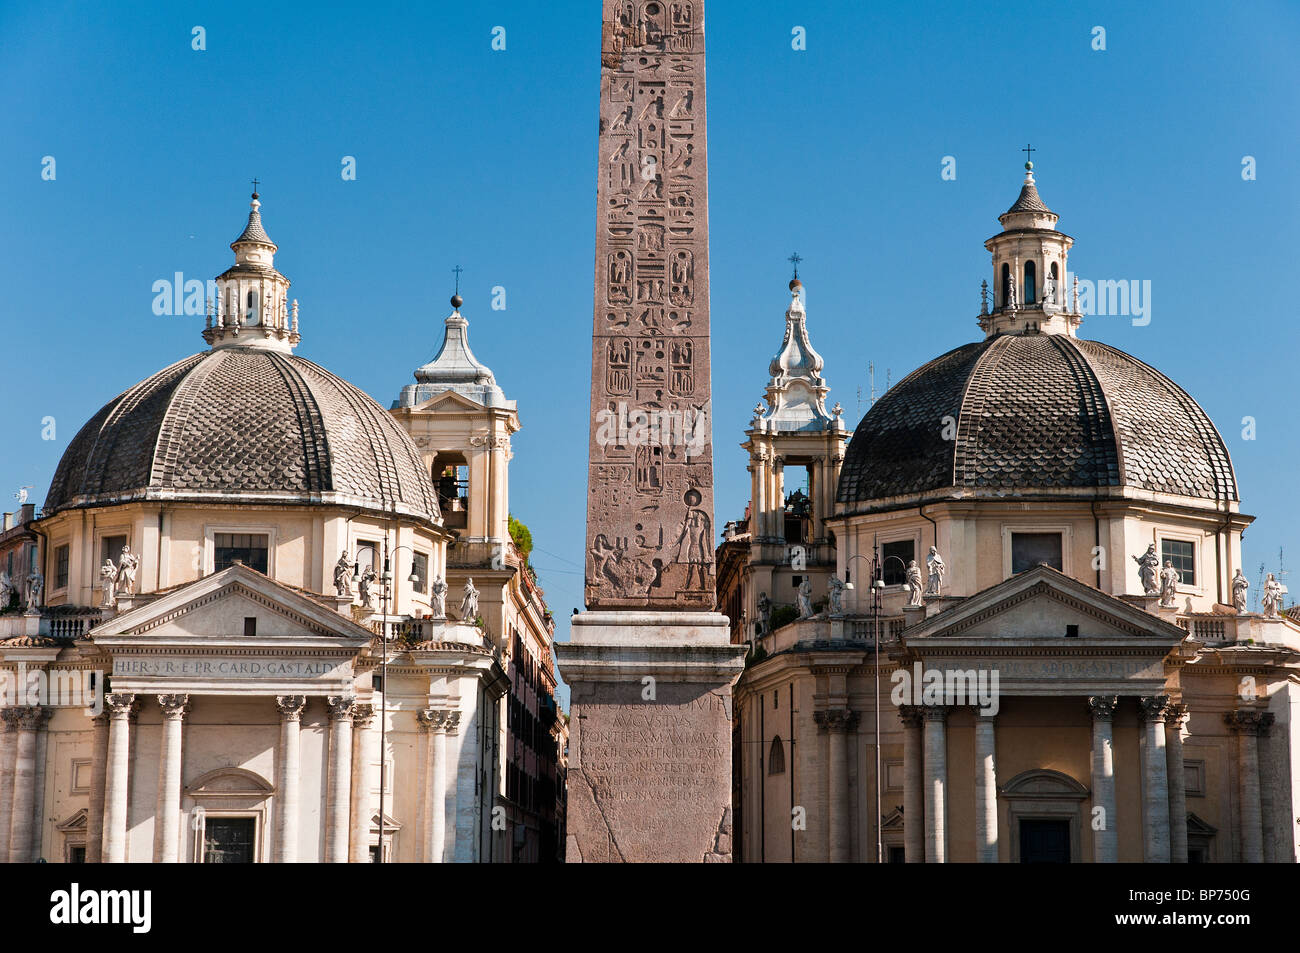 La Piazza del Popolo avec l'obélisque de Ramsès II dans le centre et les deux églises à l'arrière, Rome, Italie Banque D'Images